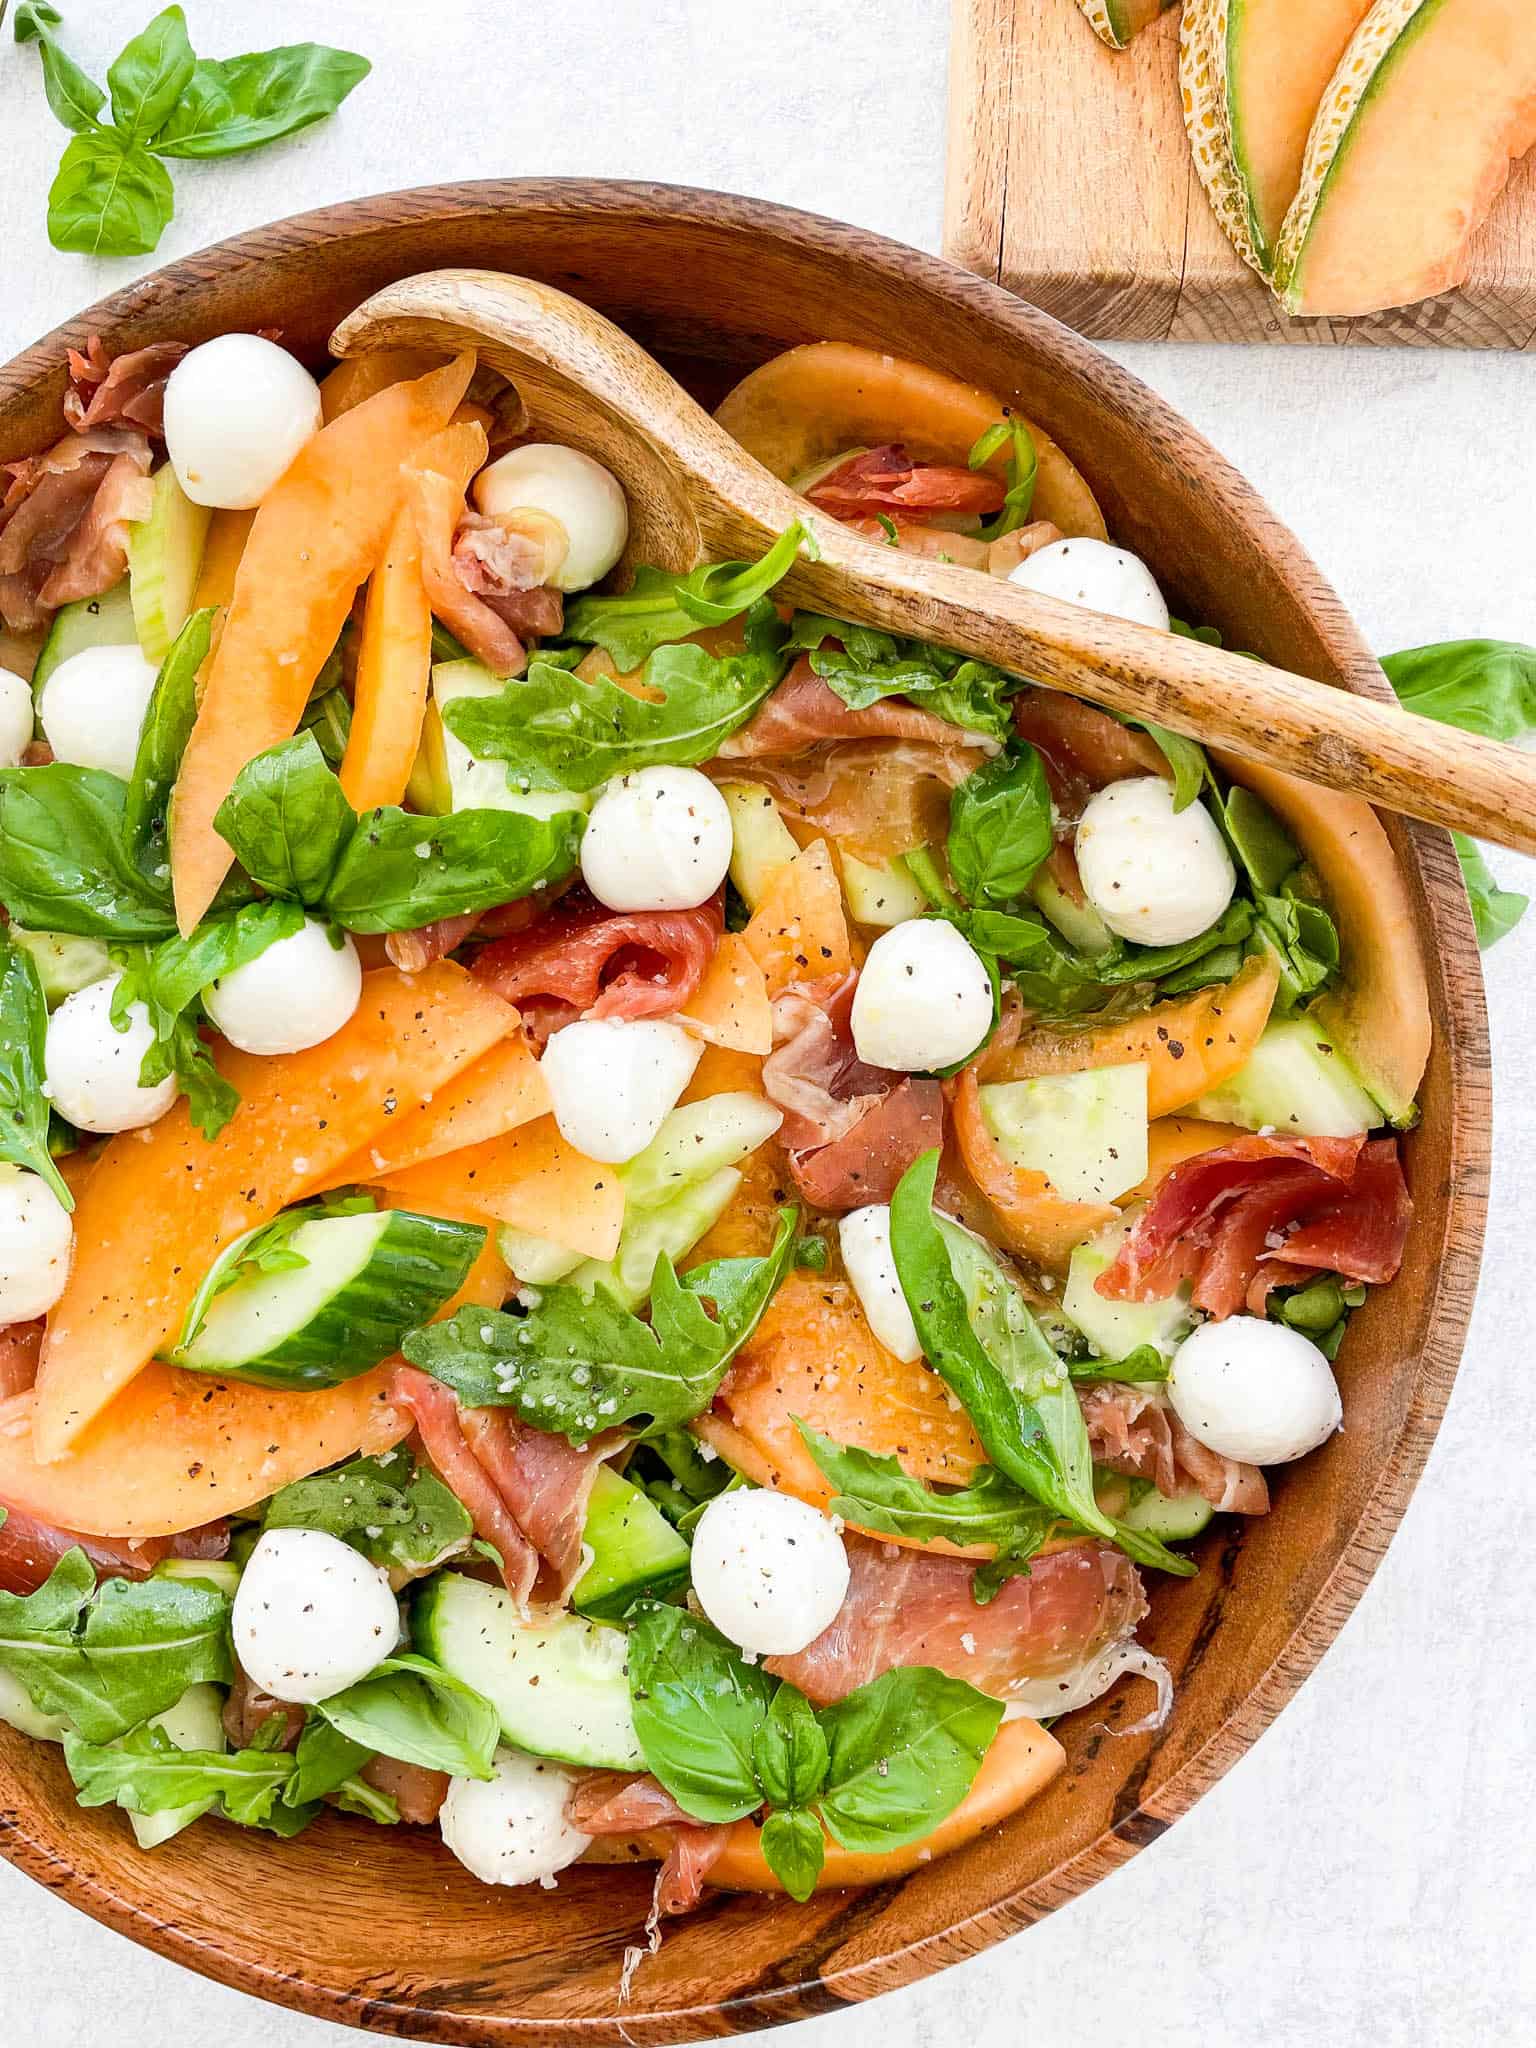 Cantaloupe Salad with Arugula and Prosciutto